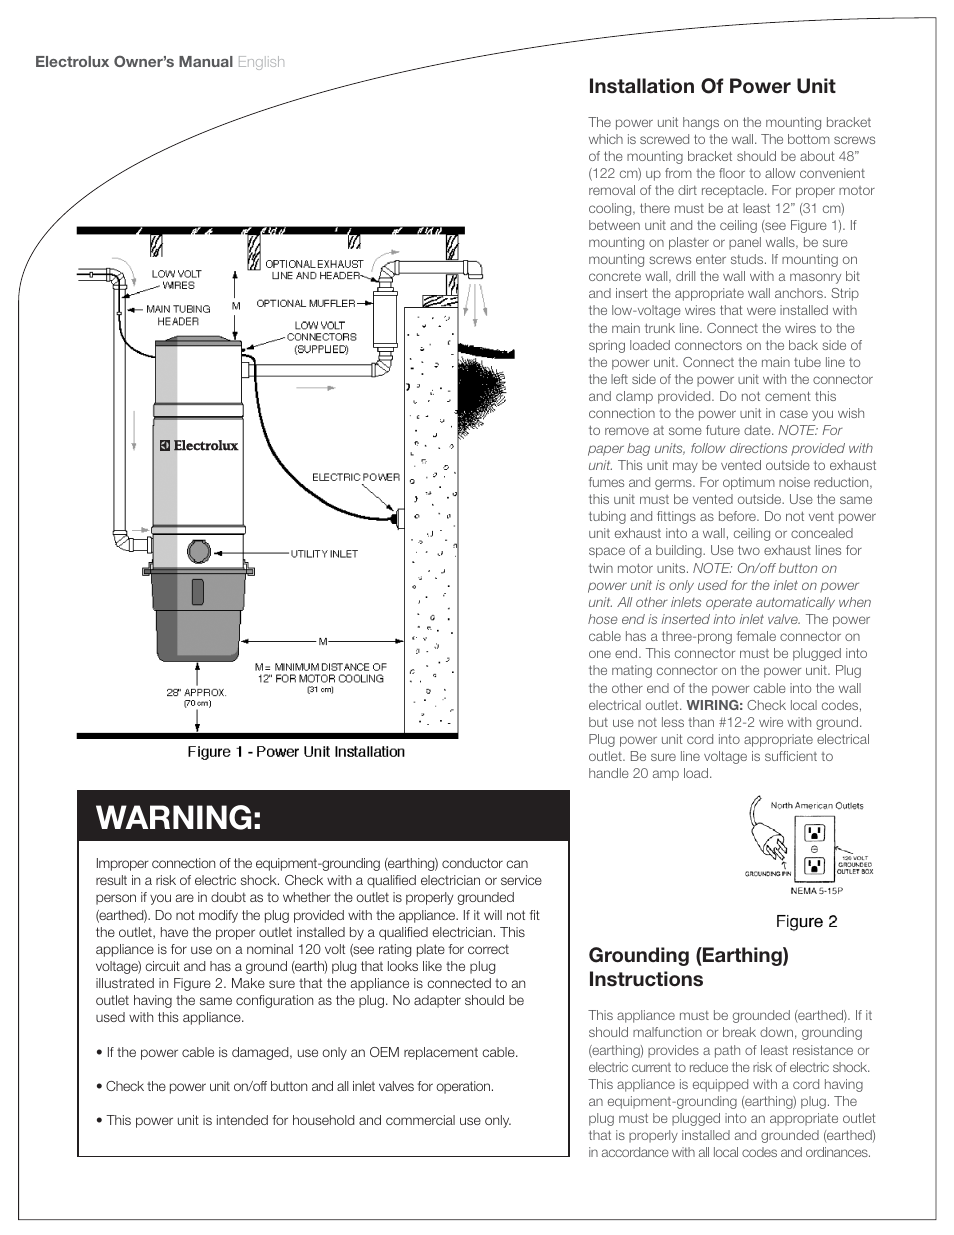 Warning | Electrolux PU3650 User Manual | Page 6 / 20